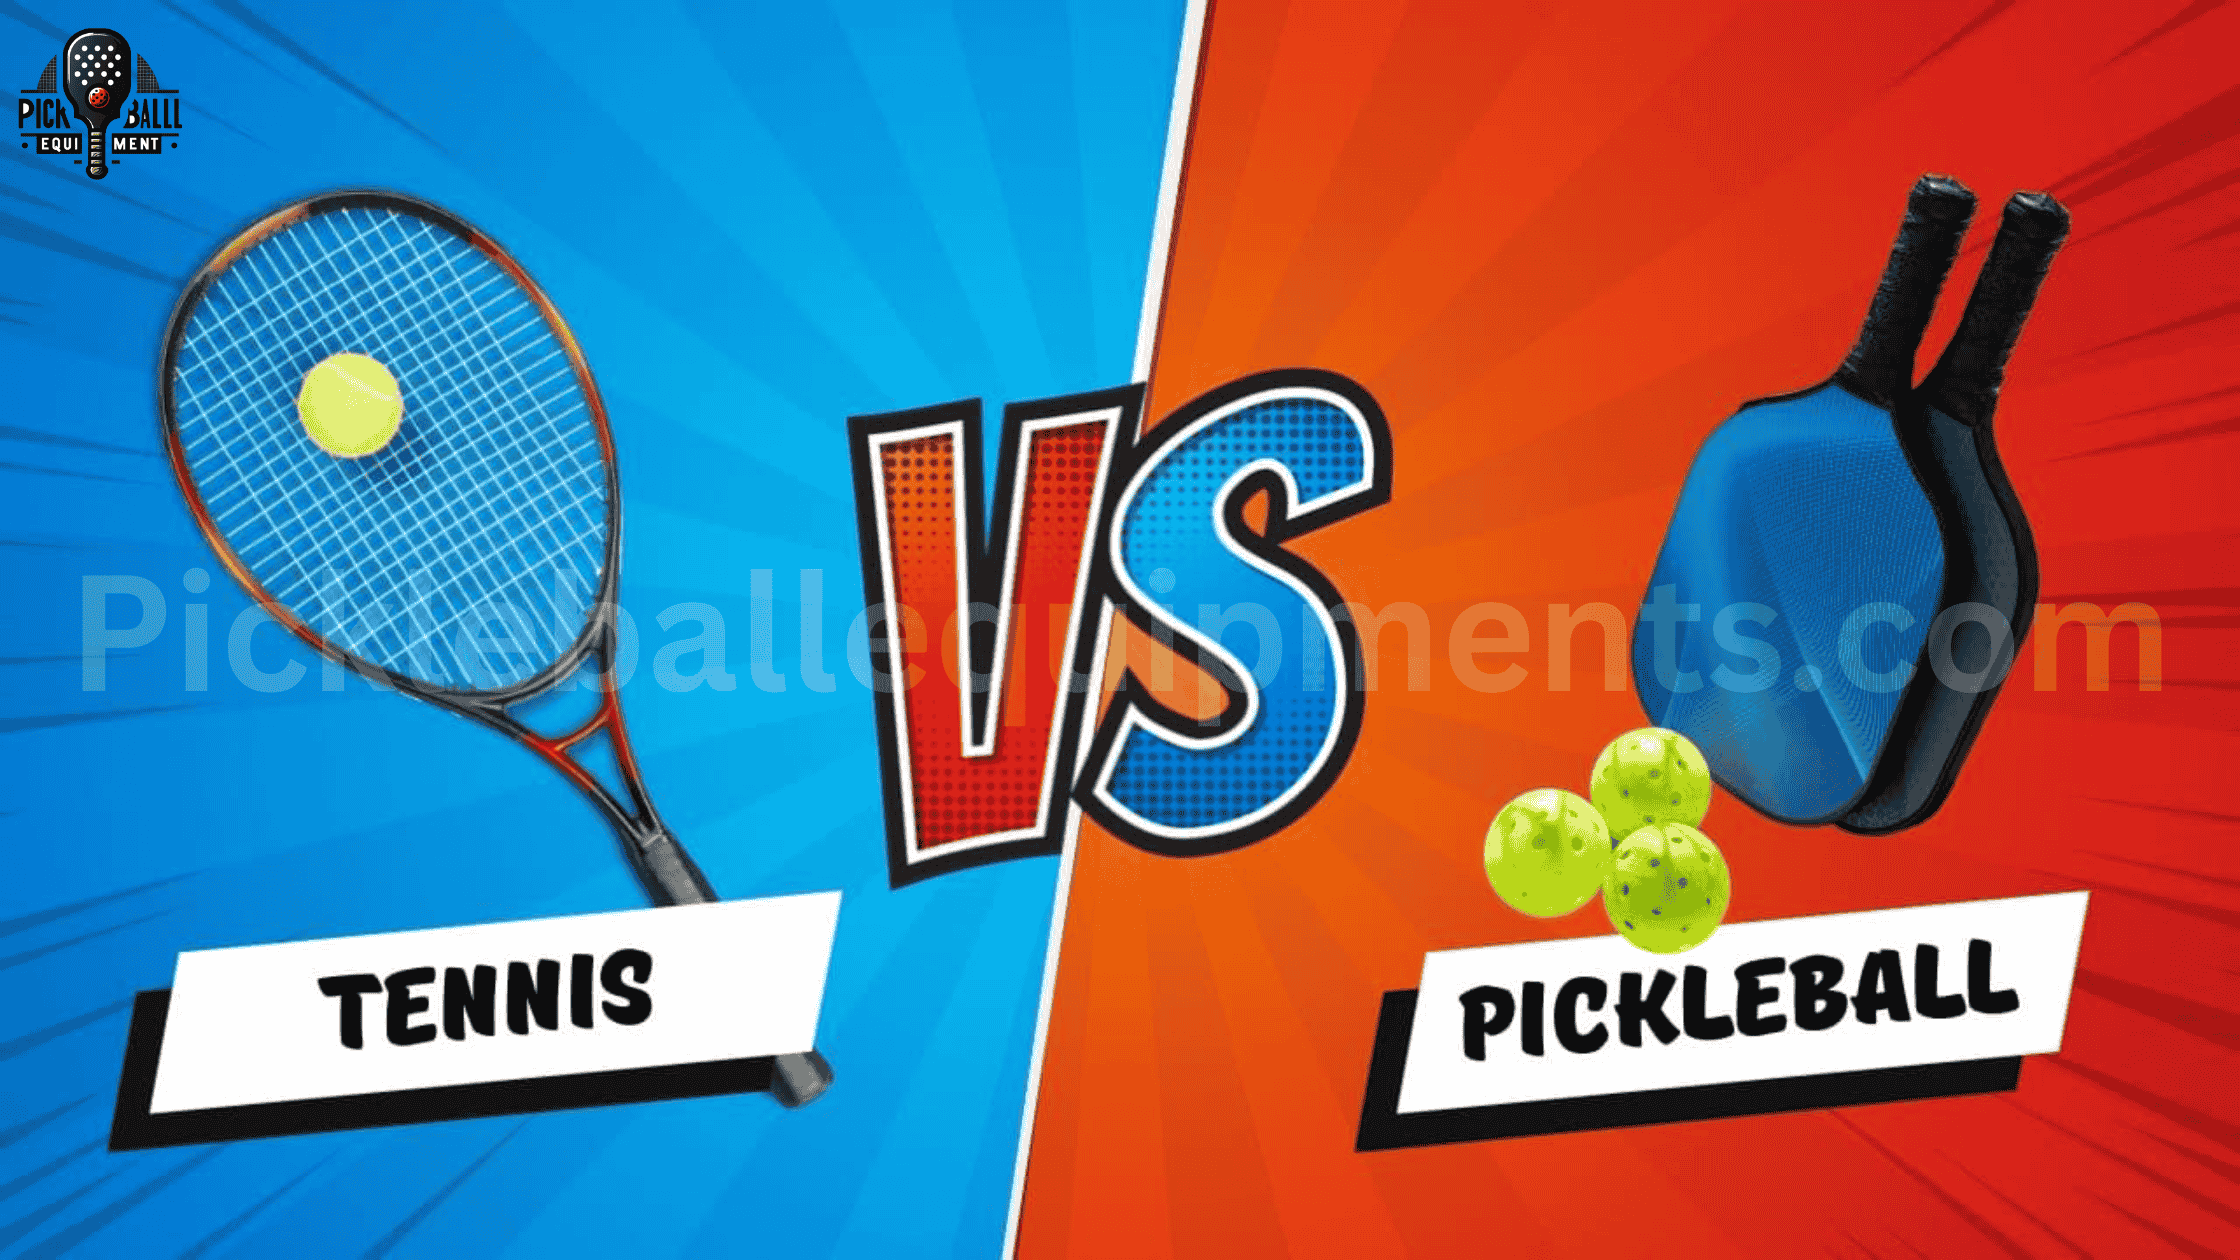 Calories Burned Pickleball vs Tennis